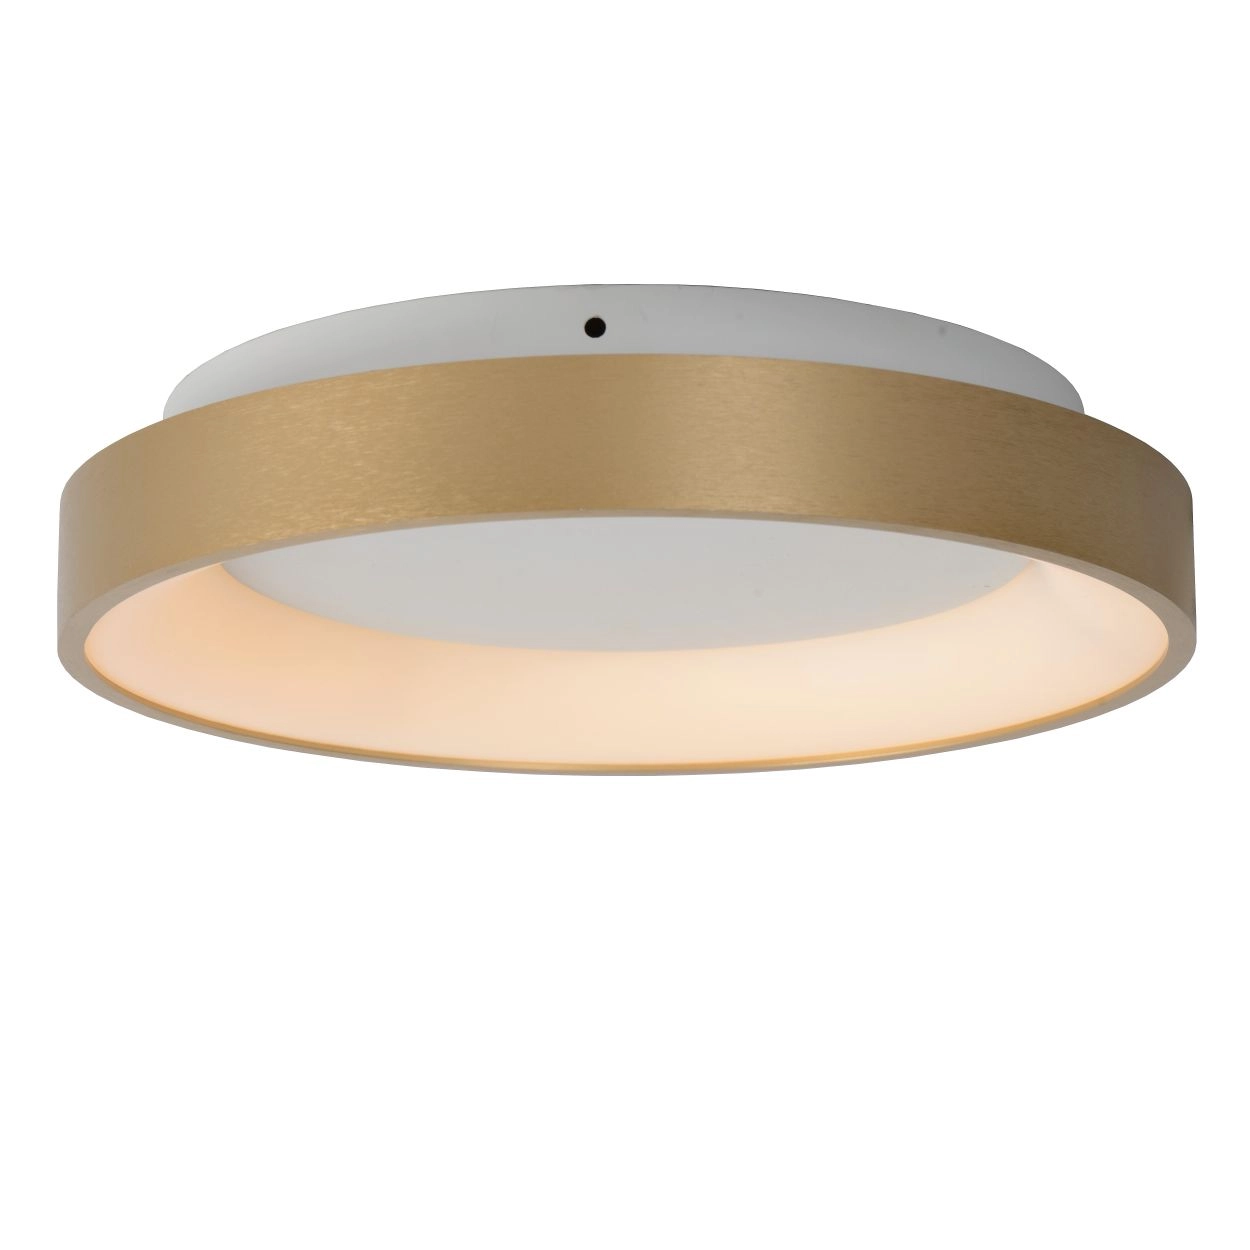 LU 46103/20/02 Lucide VIDAL - Flush ceiling light - Ø 28 cm - LED Dim. - 1x20W 2700K - Matt Gold / B